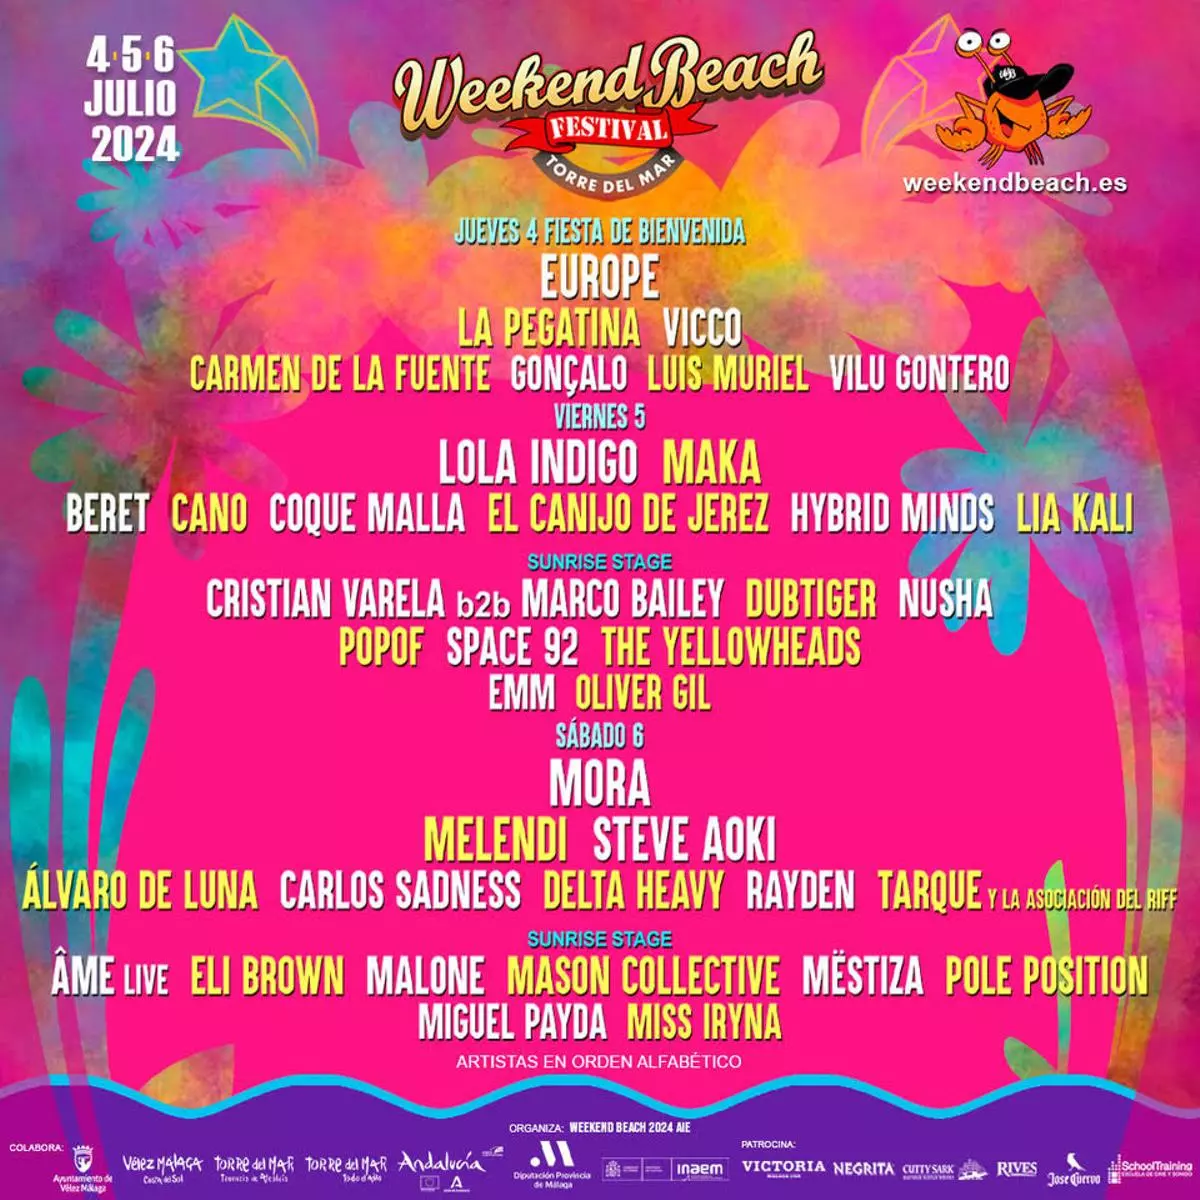 Llega el Weekend Beach 2024 del 4 al 6 de julio